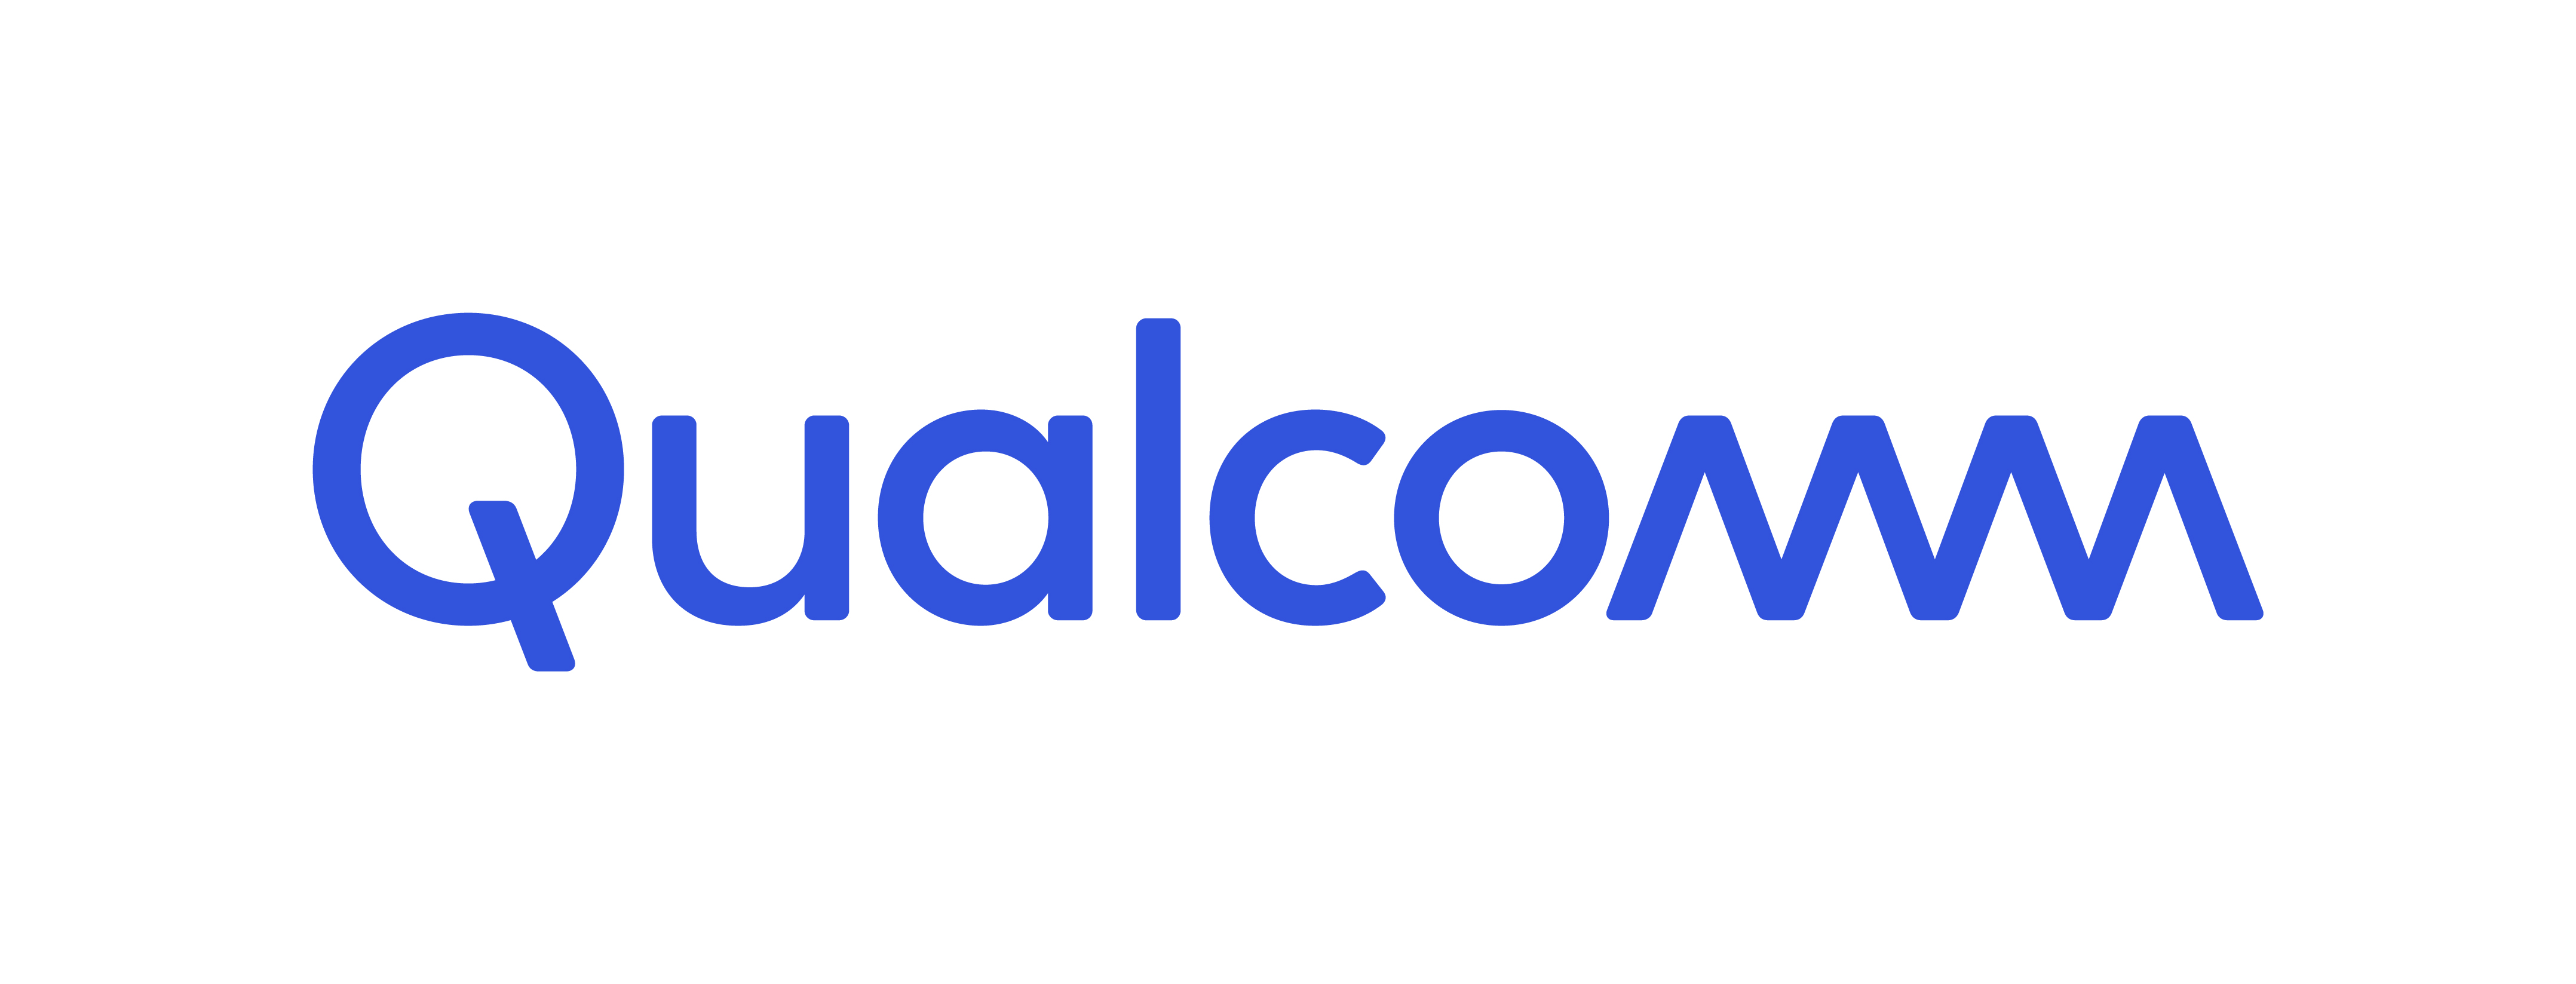 Qualcomm Inc. Logo